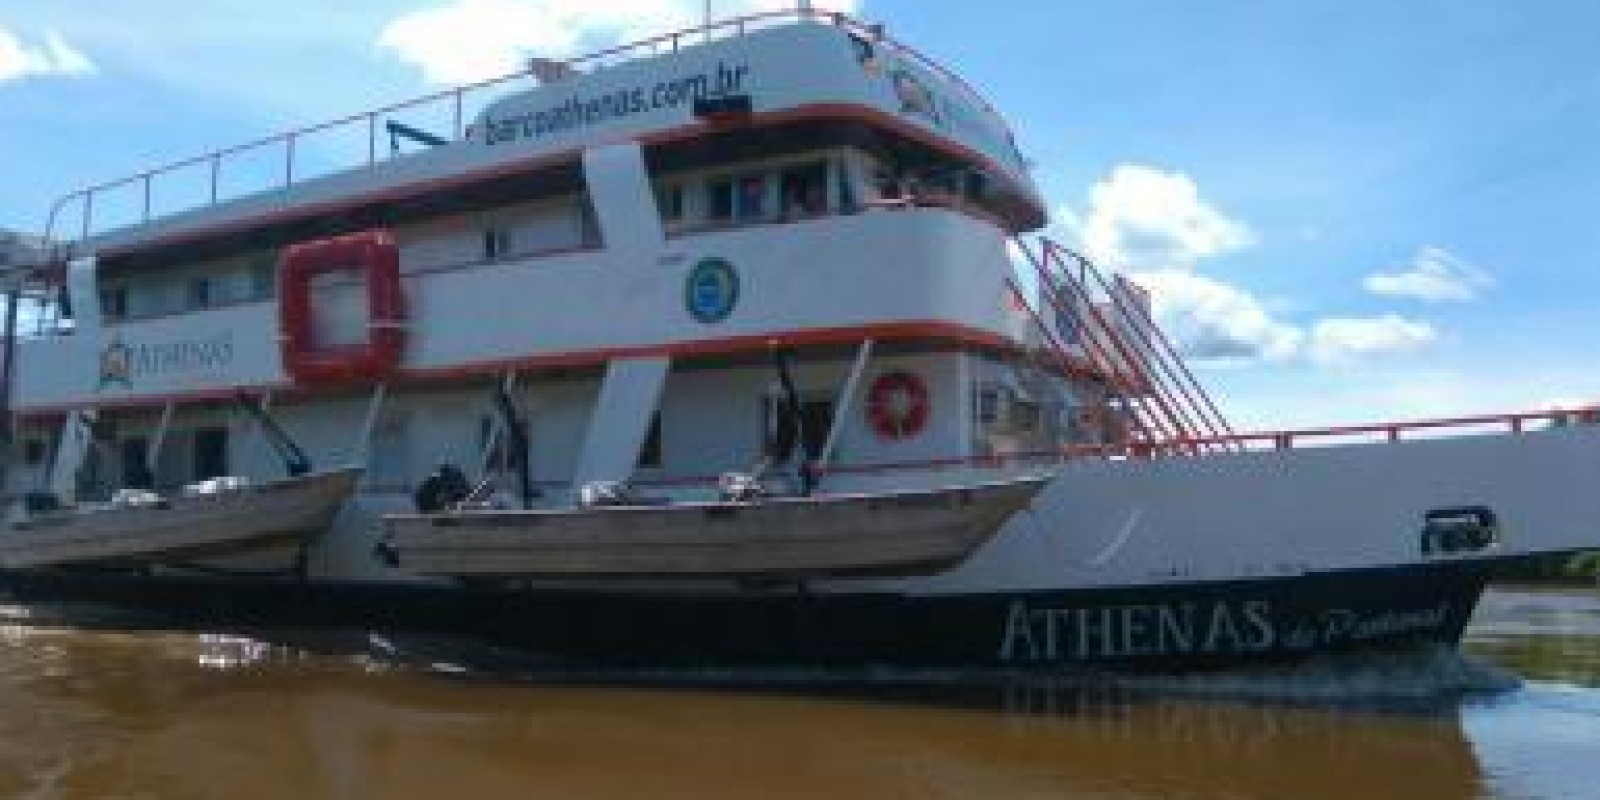 Barco Athenas - Porto Cercado - 16 pessoas - Foto 1 de 18